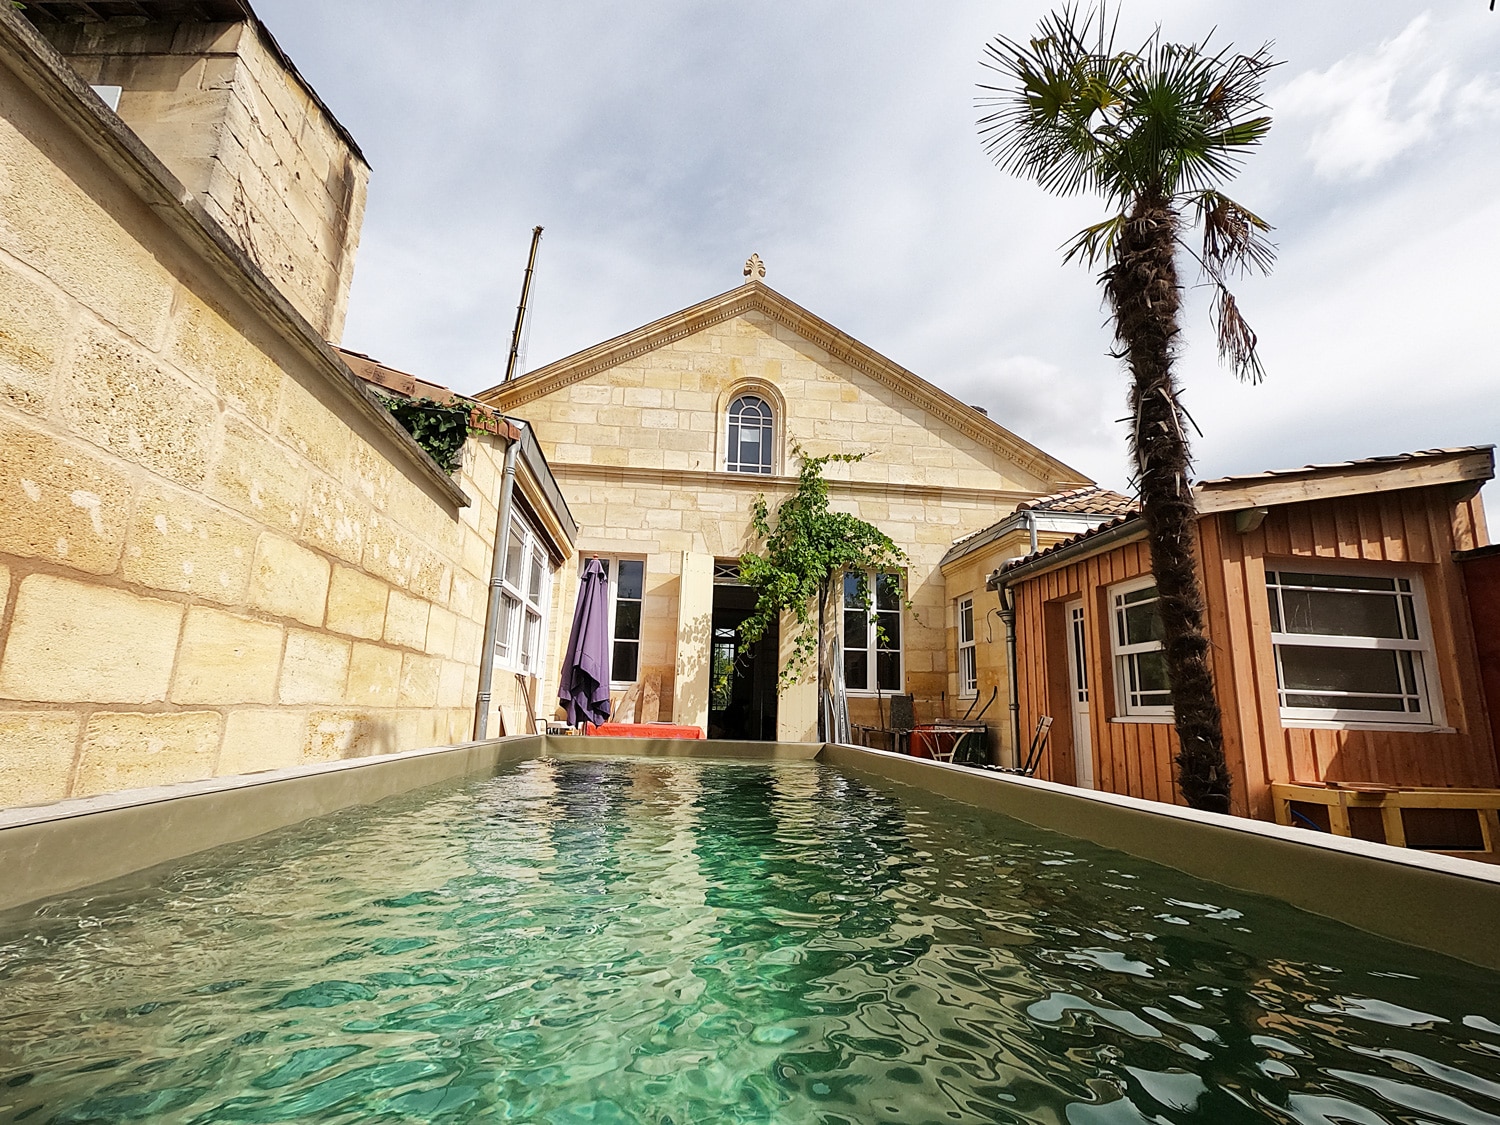 Liner de piscine argile - Bassins Atypiques - Bordeaux